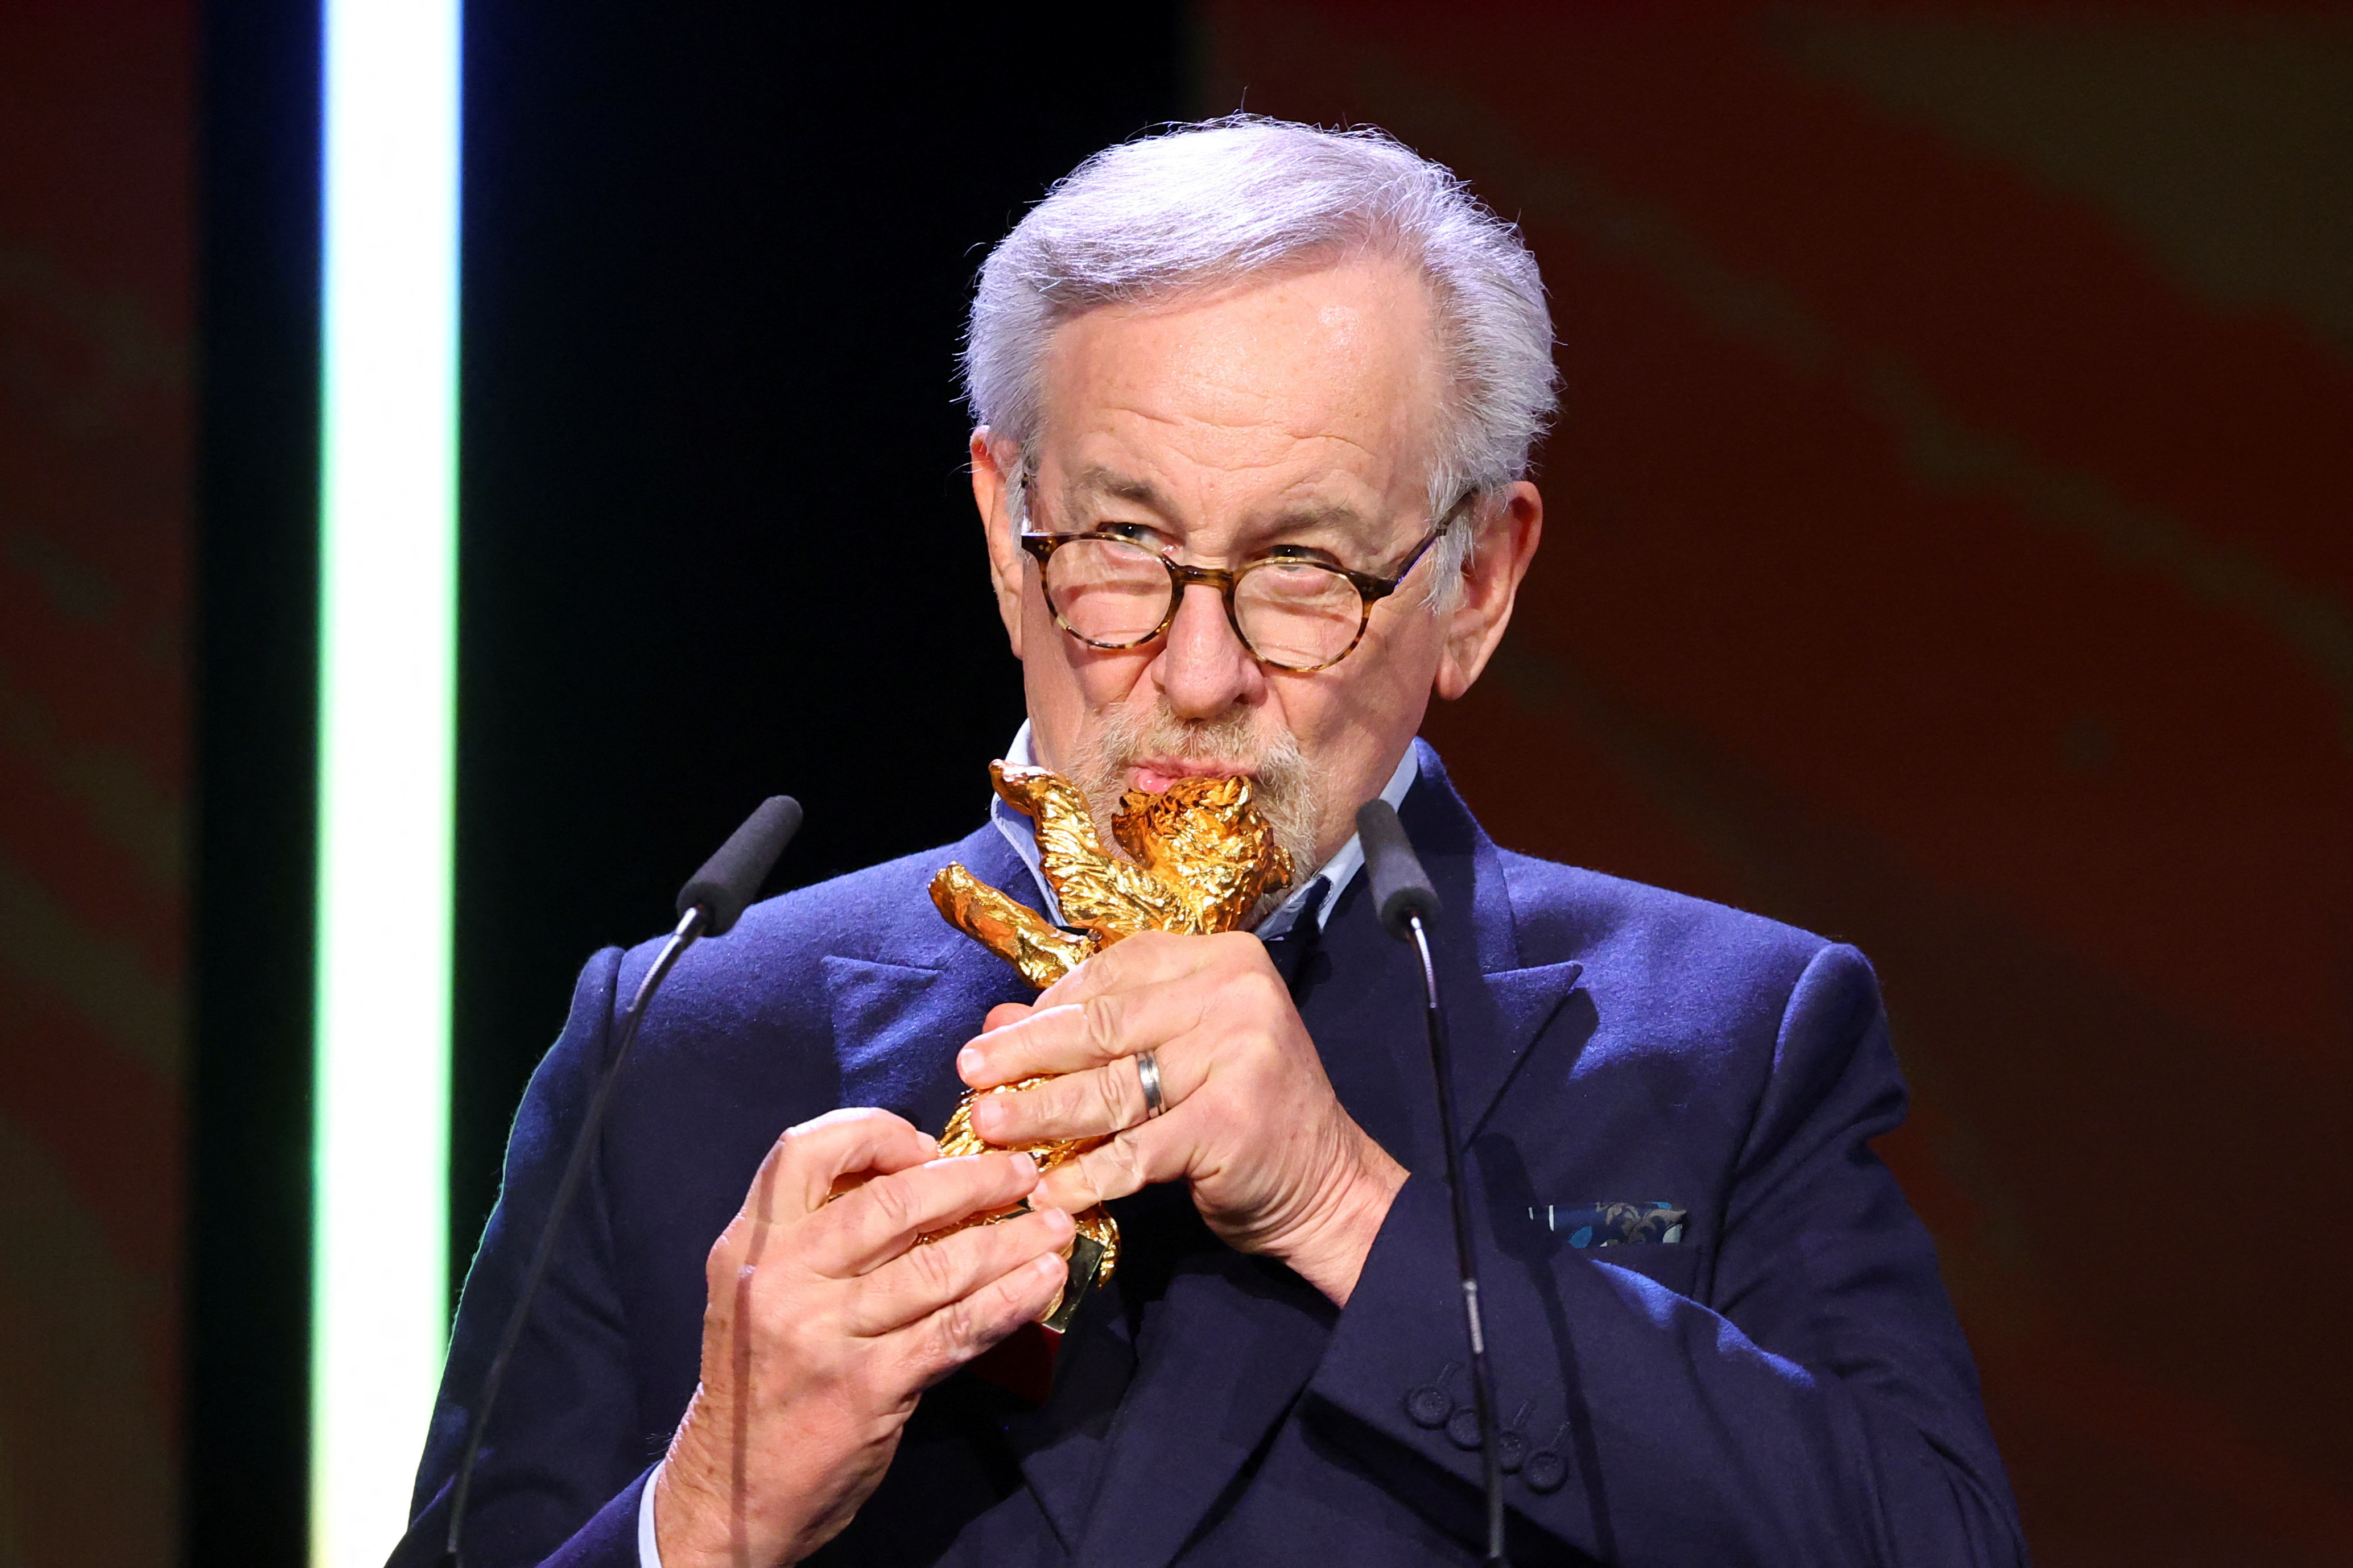 Still filming, Spielberg, 76, wins Berlin lifetime award | Reuters